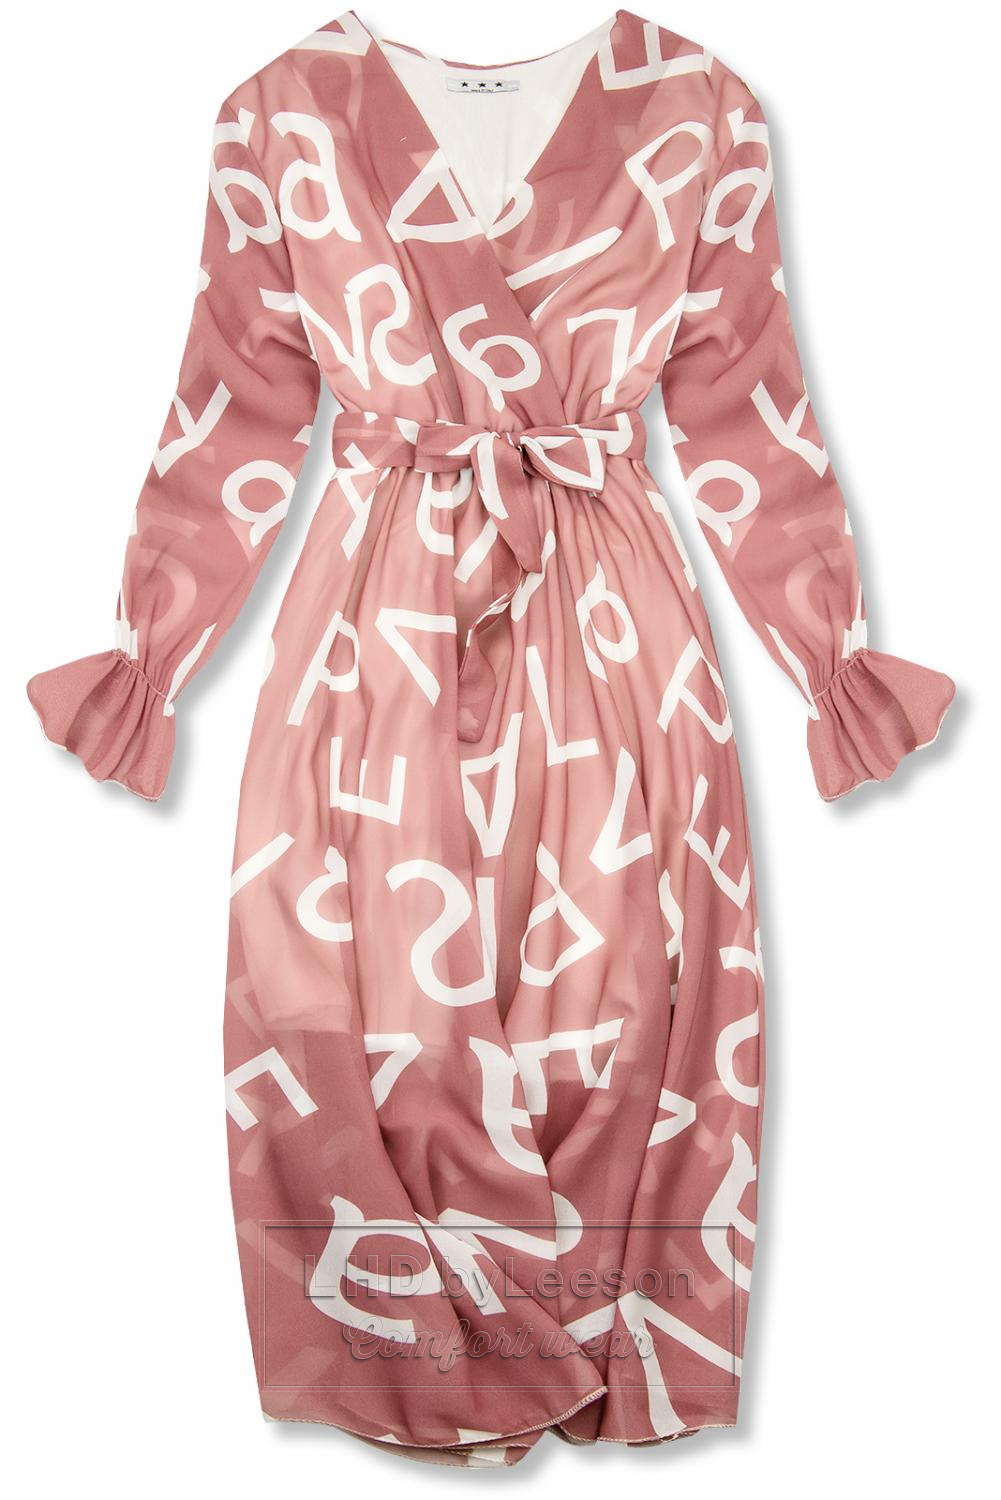 Jasnoróżowa midi sukienka z nadrukiem w motywie liter